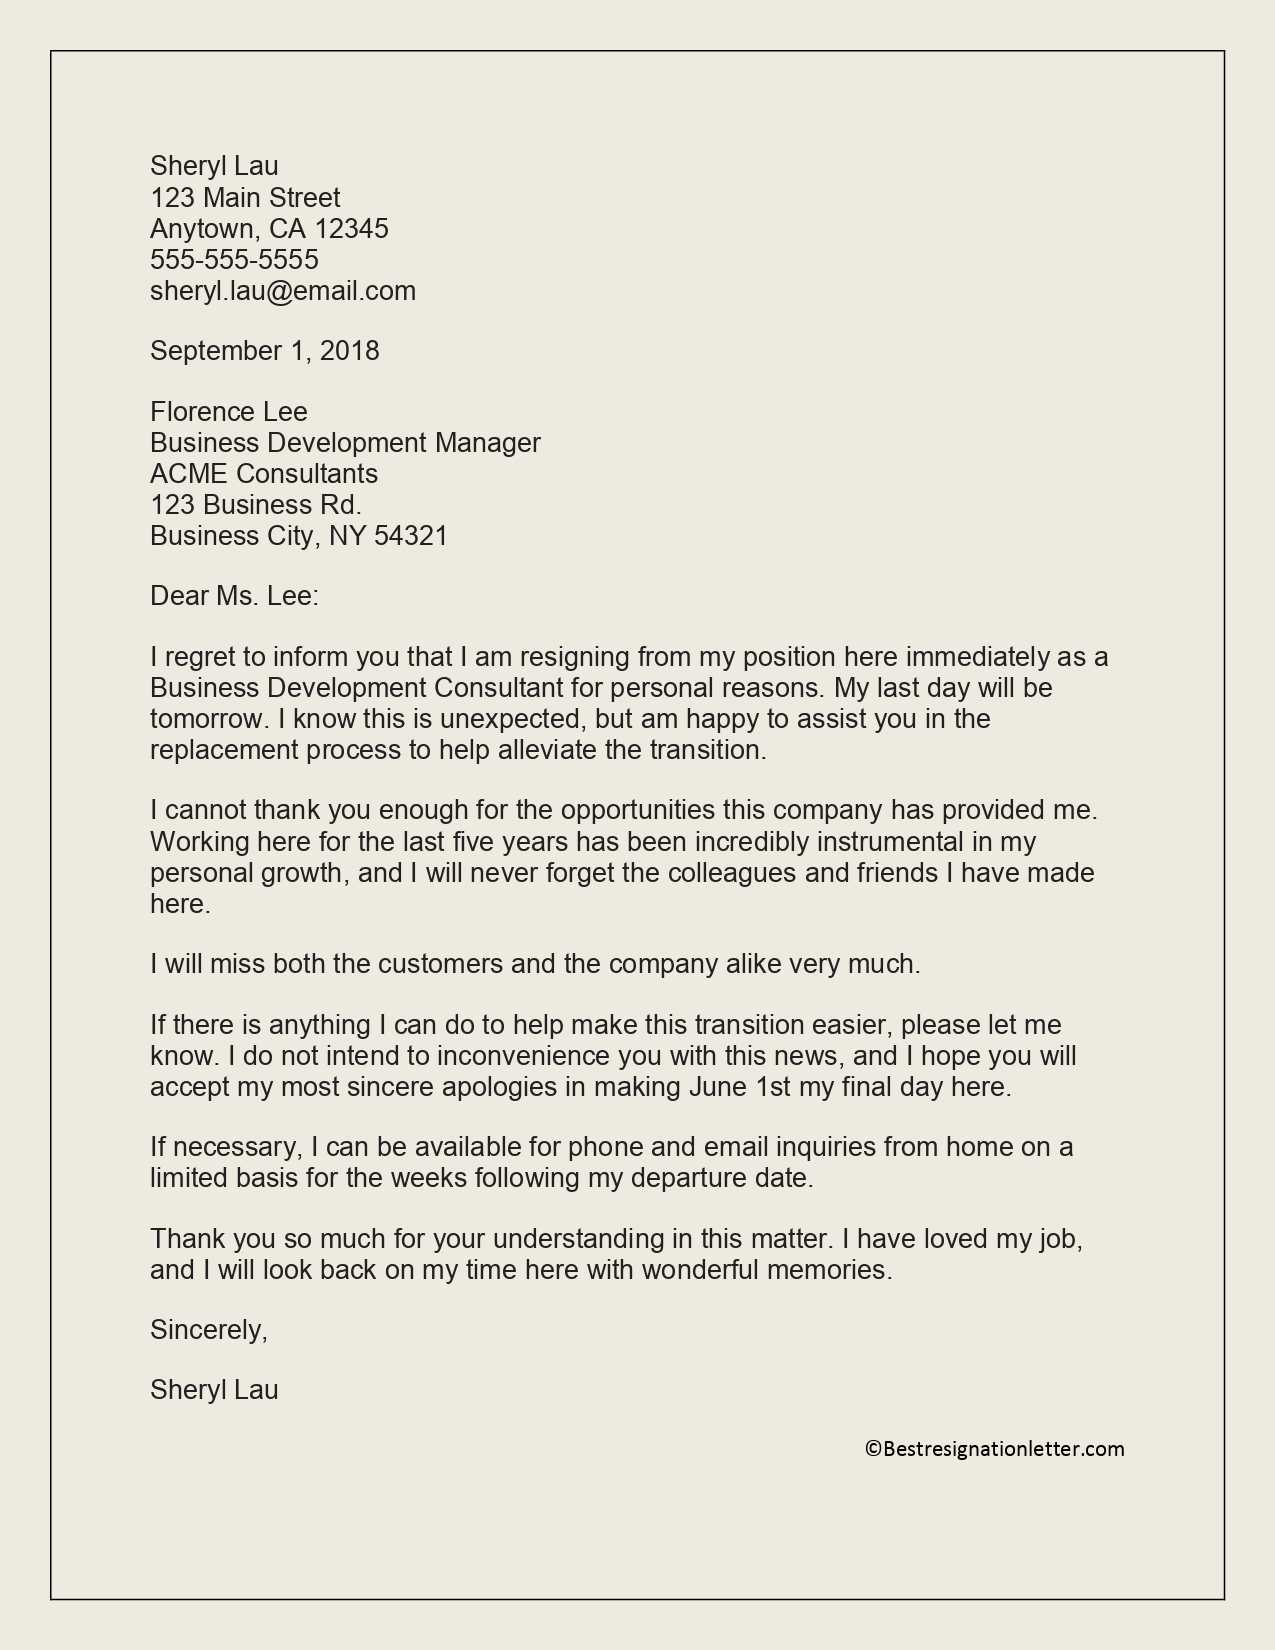 Immediate Resignation Letter Sample | Best Resignation Letter Within Draft Letter Of Resignation Template